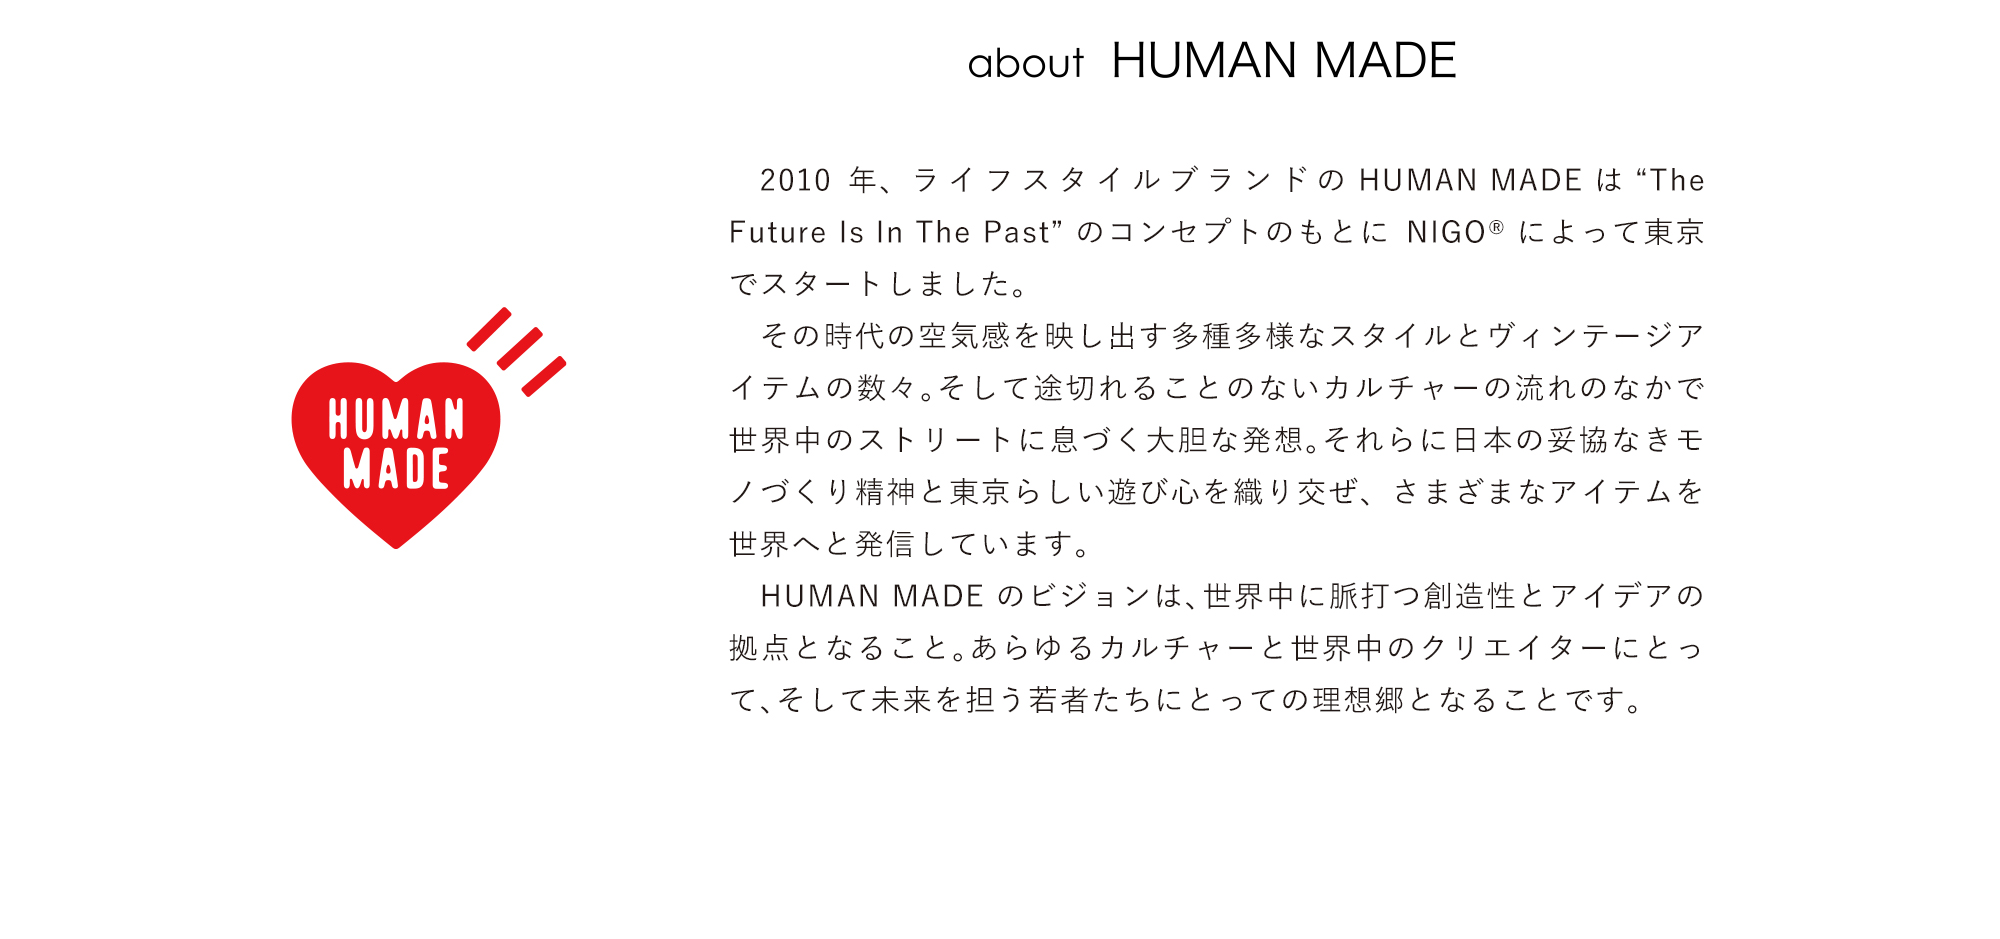 アーユル・チェアー× HUMAN MADE 特別コラボレーションモデル about HUMAN MADE